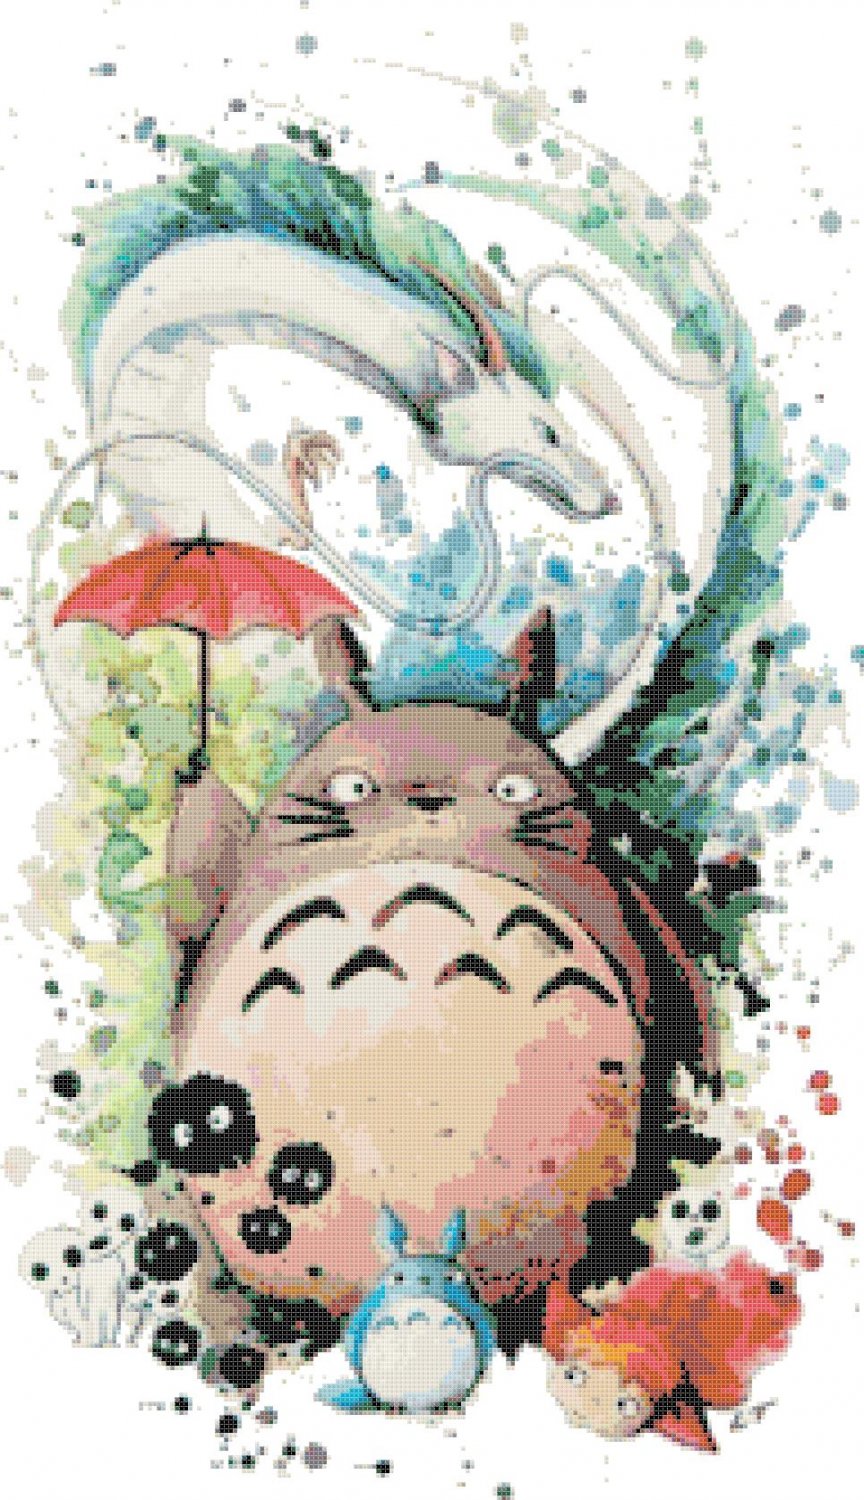 My Neighbor Totoro of Hayao Miyazaki - 13.79" x 23.93" - Cross Stitch Pattern Pdf E1941